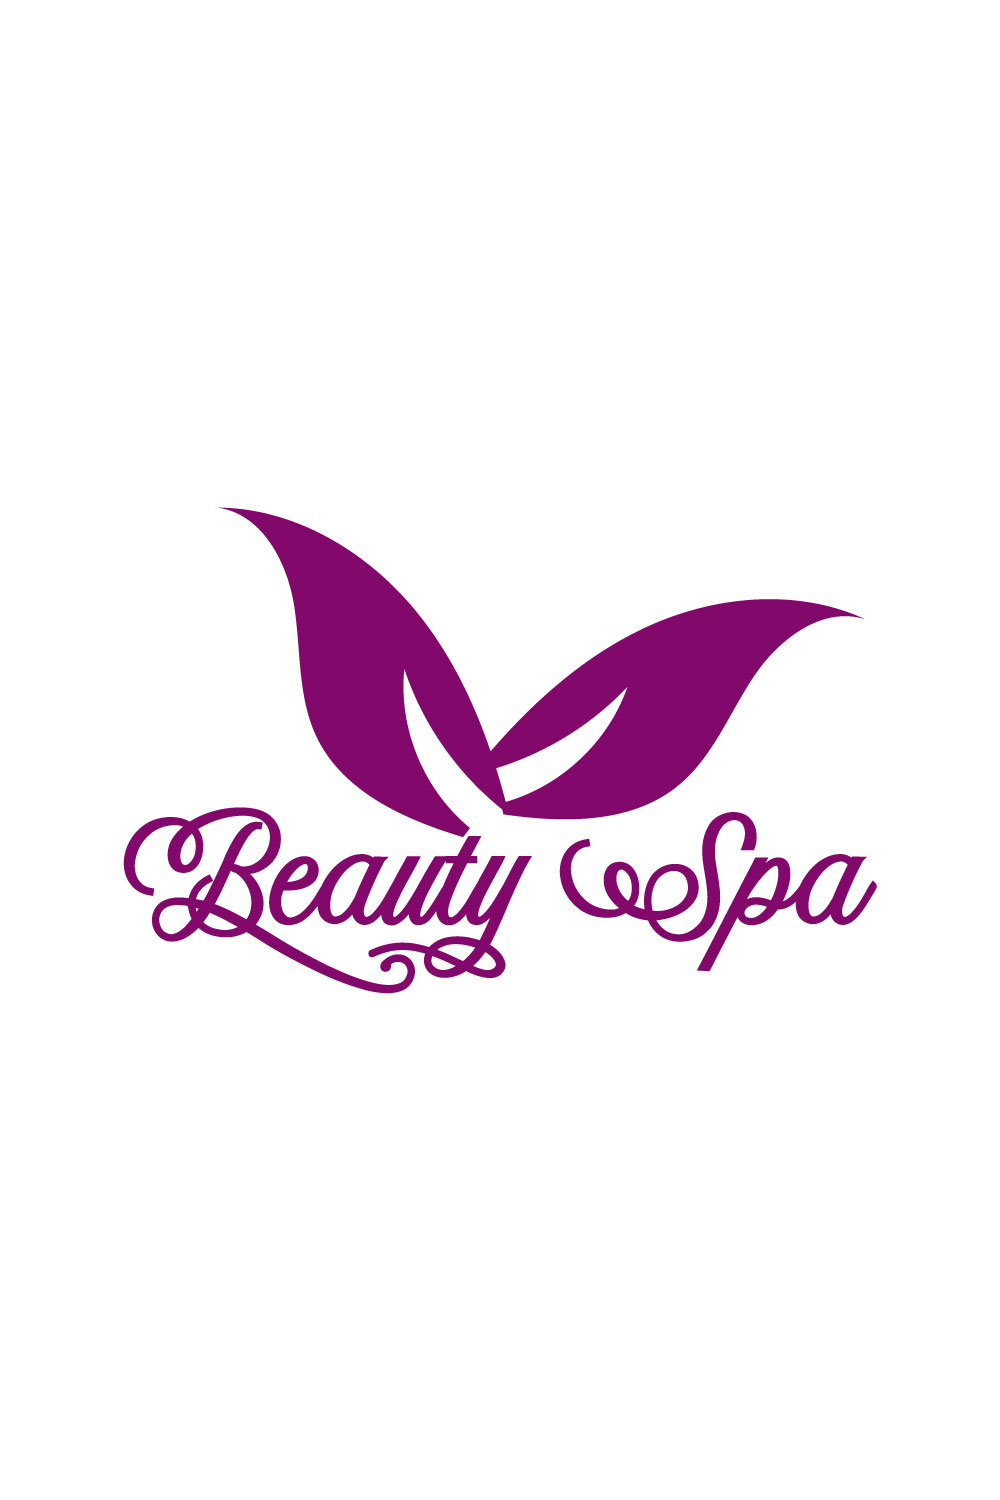 Free Spa Beauty logo - MasterBundles